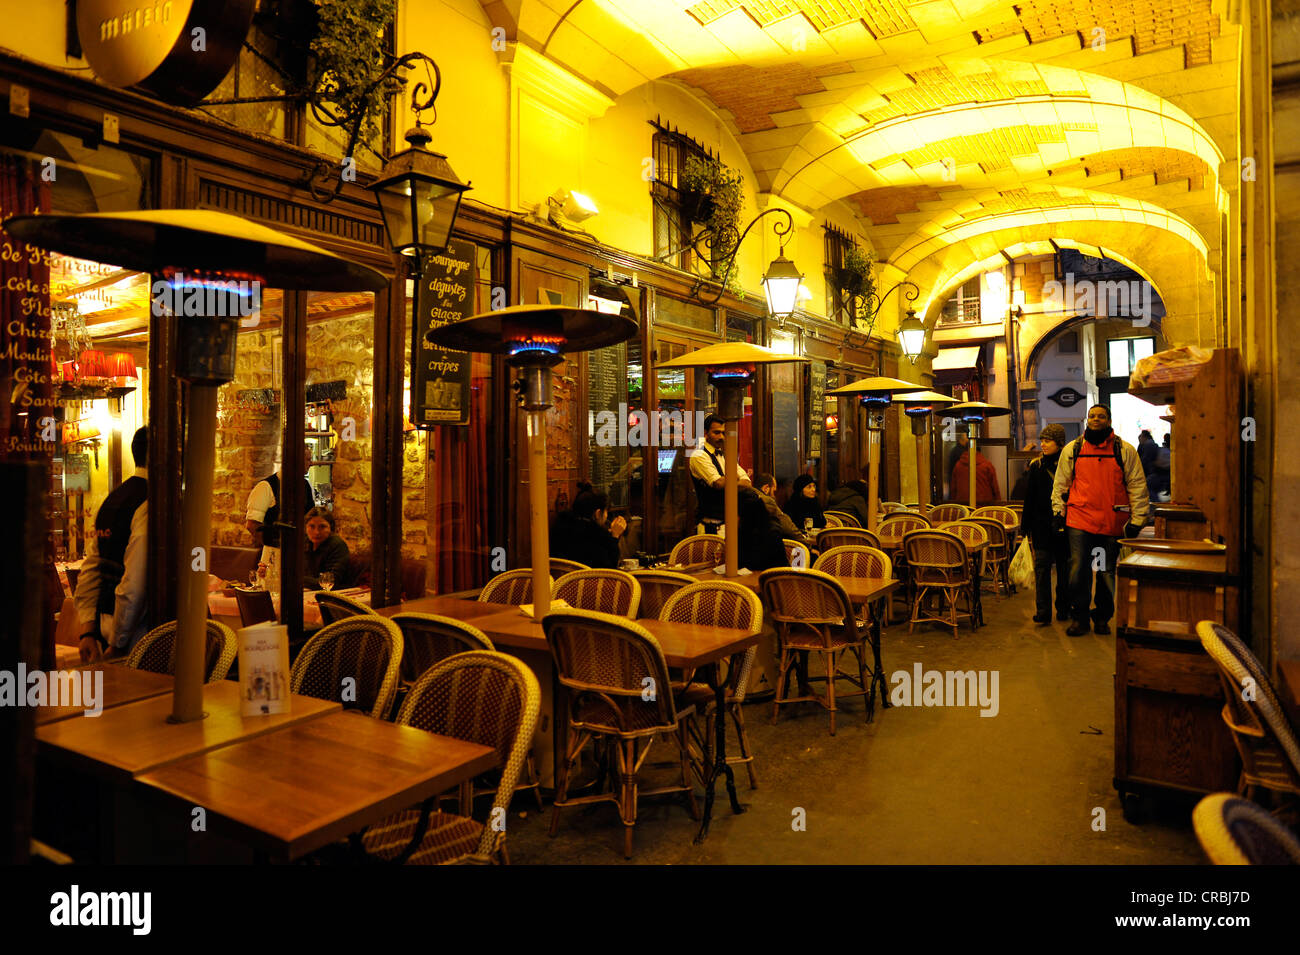 Cafe Chez Marianne, Place des Vosges, Le Marais or the Jewish quarter of Paris, St. Paul Village, Paris, France, Europe Stock Photo